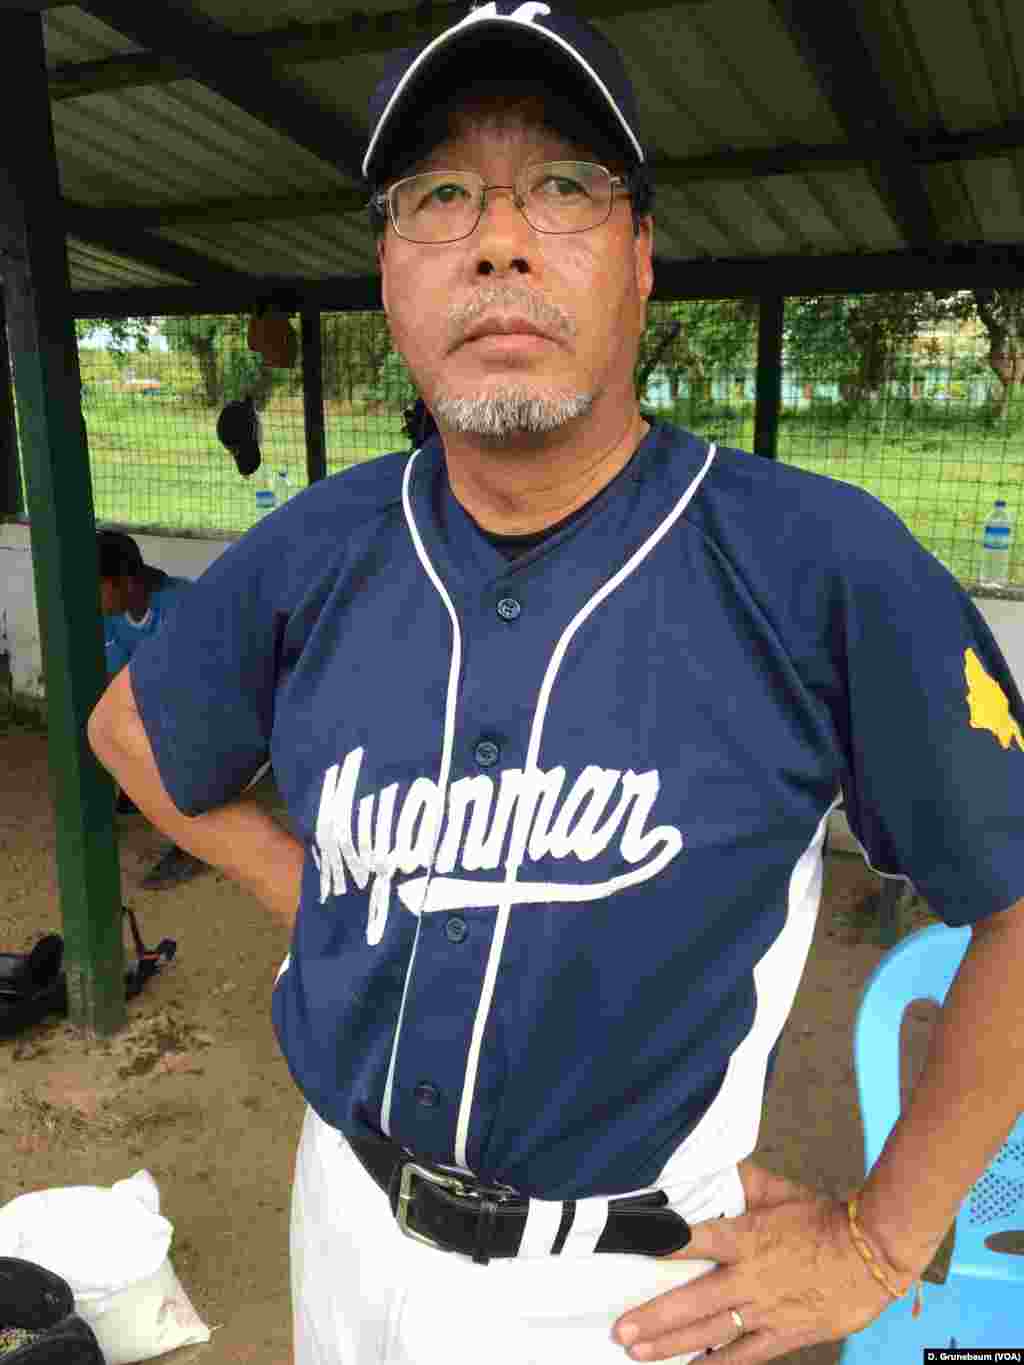 Coach Toru Iwasaki started the baseball team 18 years ago.